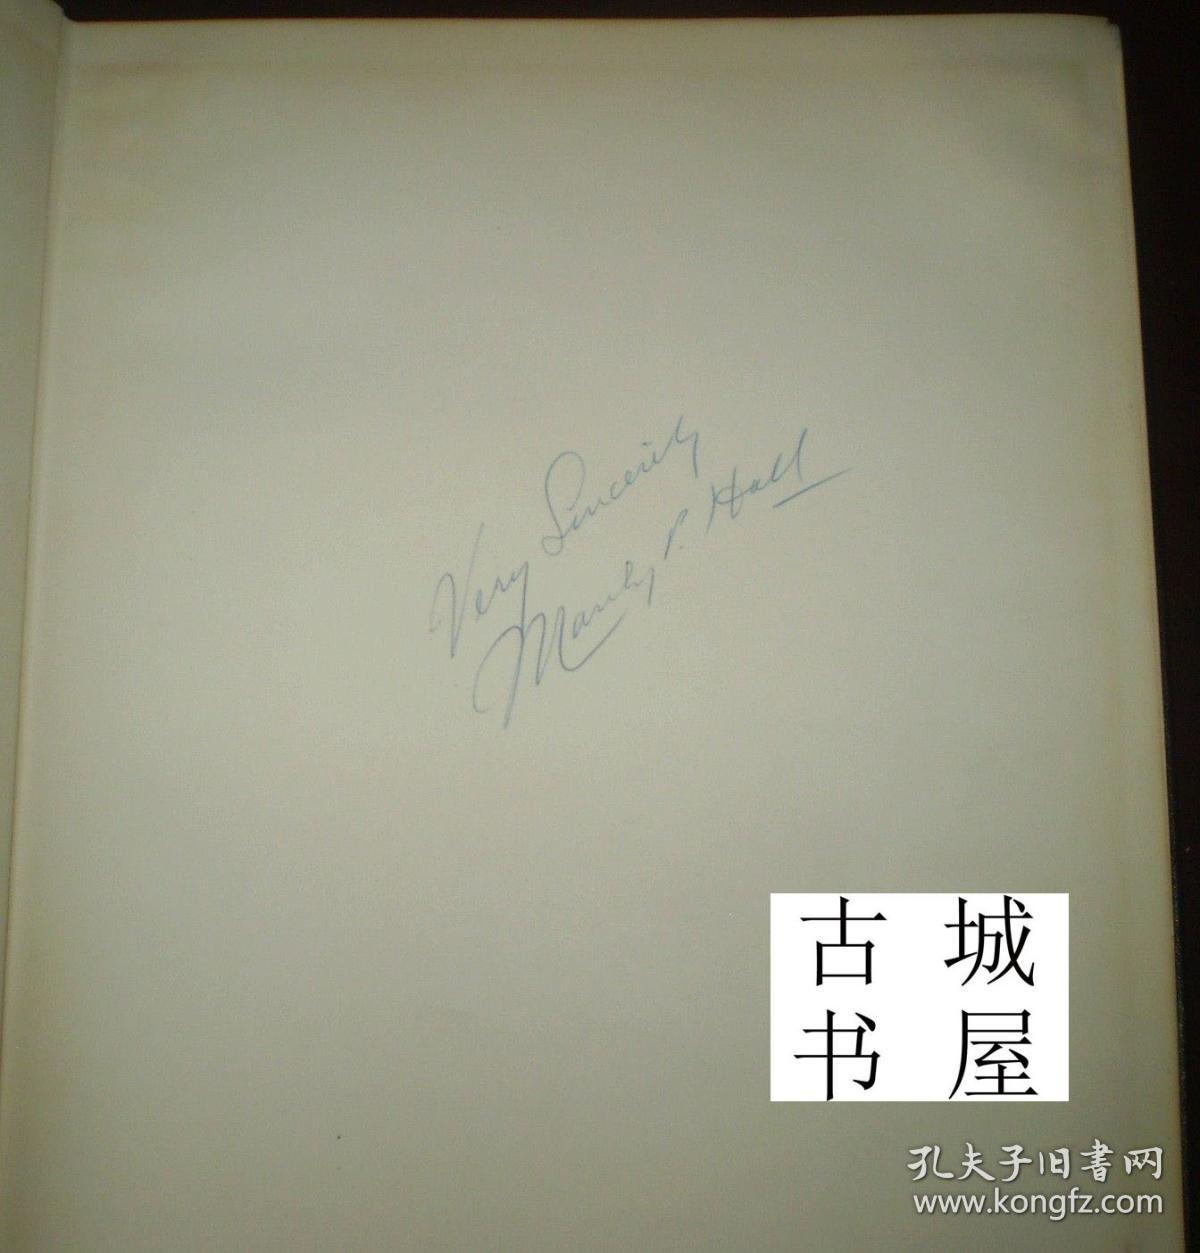 稀缺，签名版《玫瑰十字会象征与哲学百科全书》大量黑白插图，1952年出版，精装